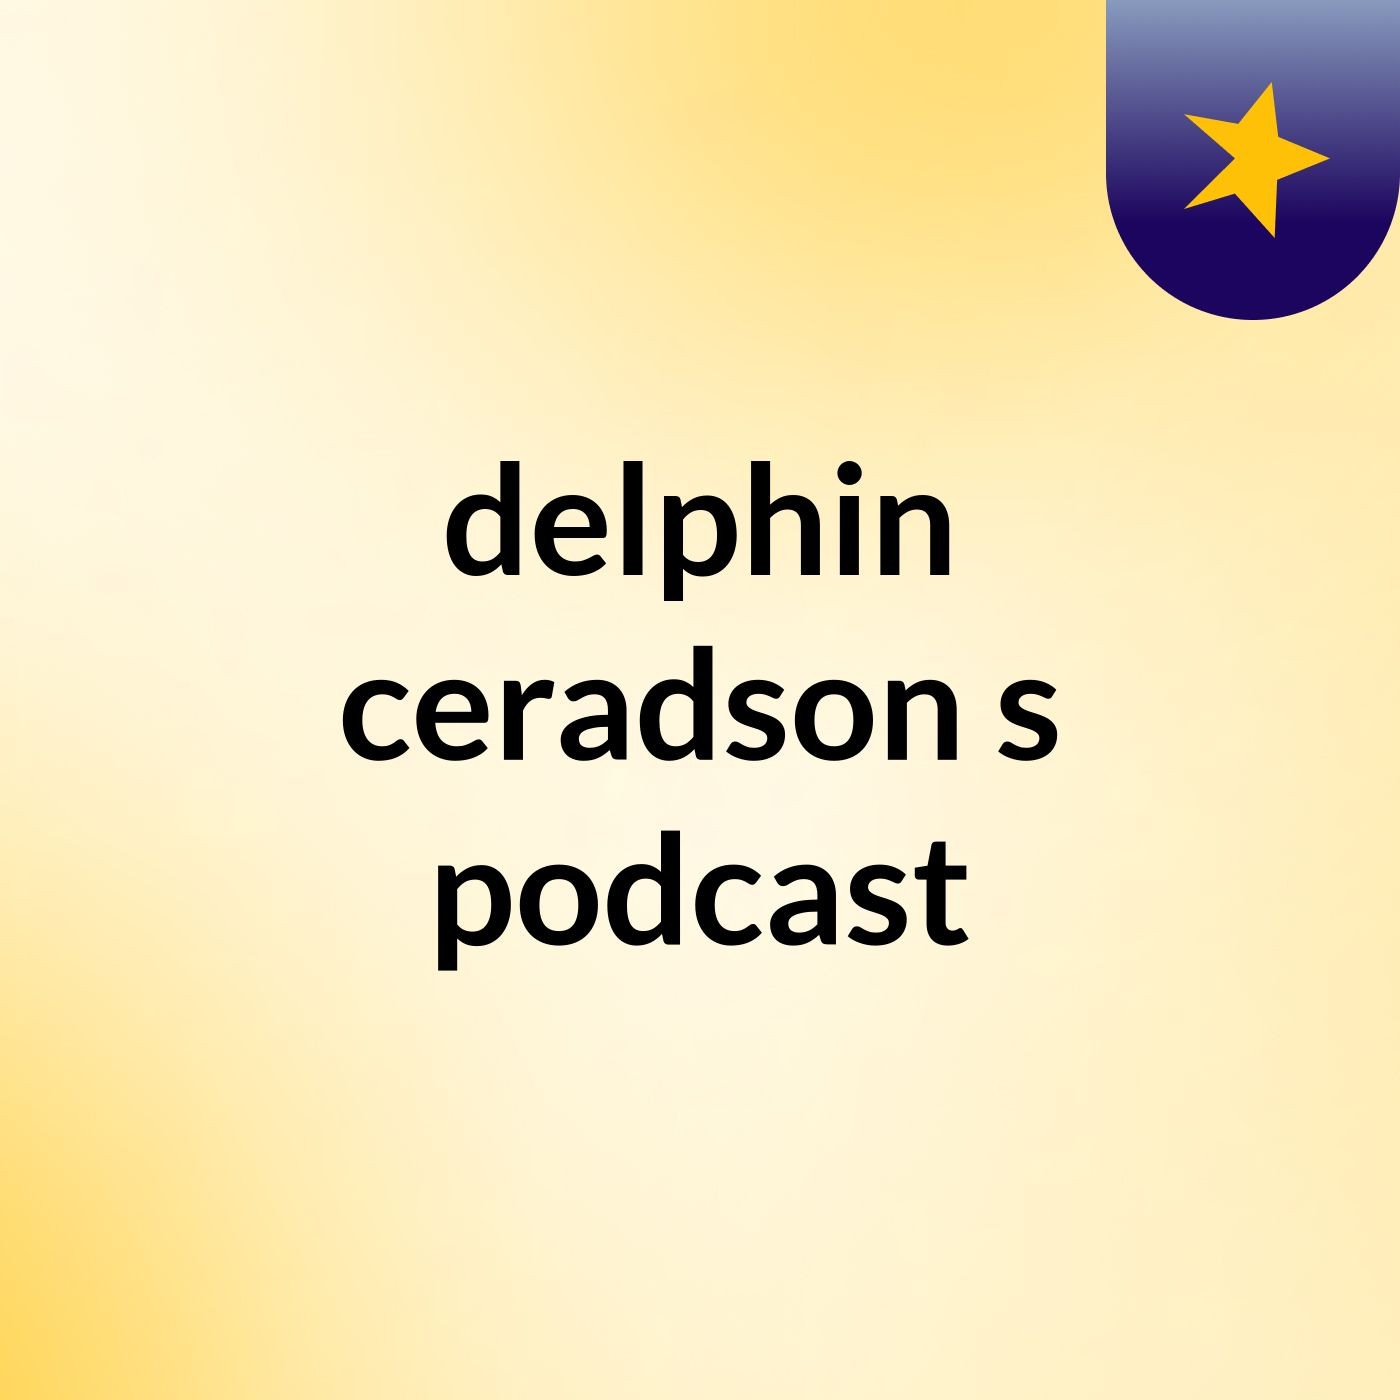 delphin ceradson's podcast